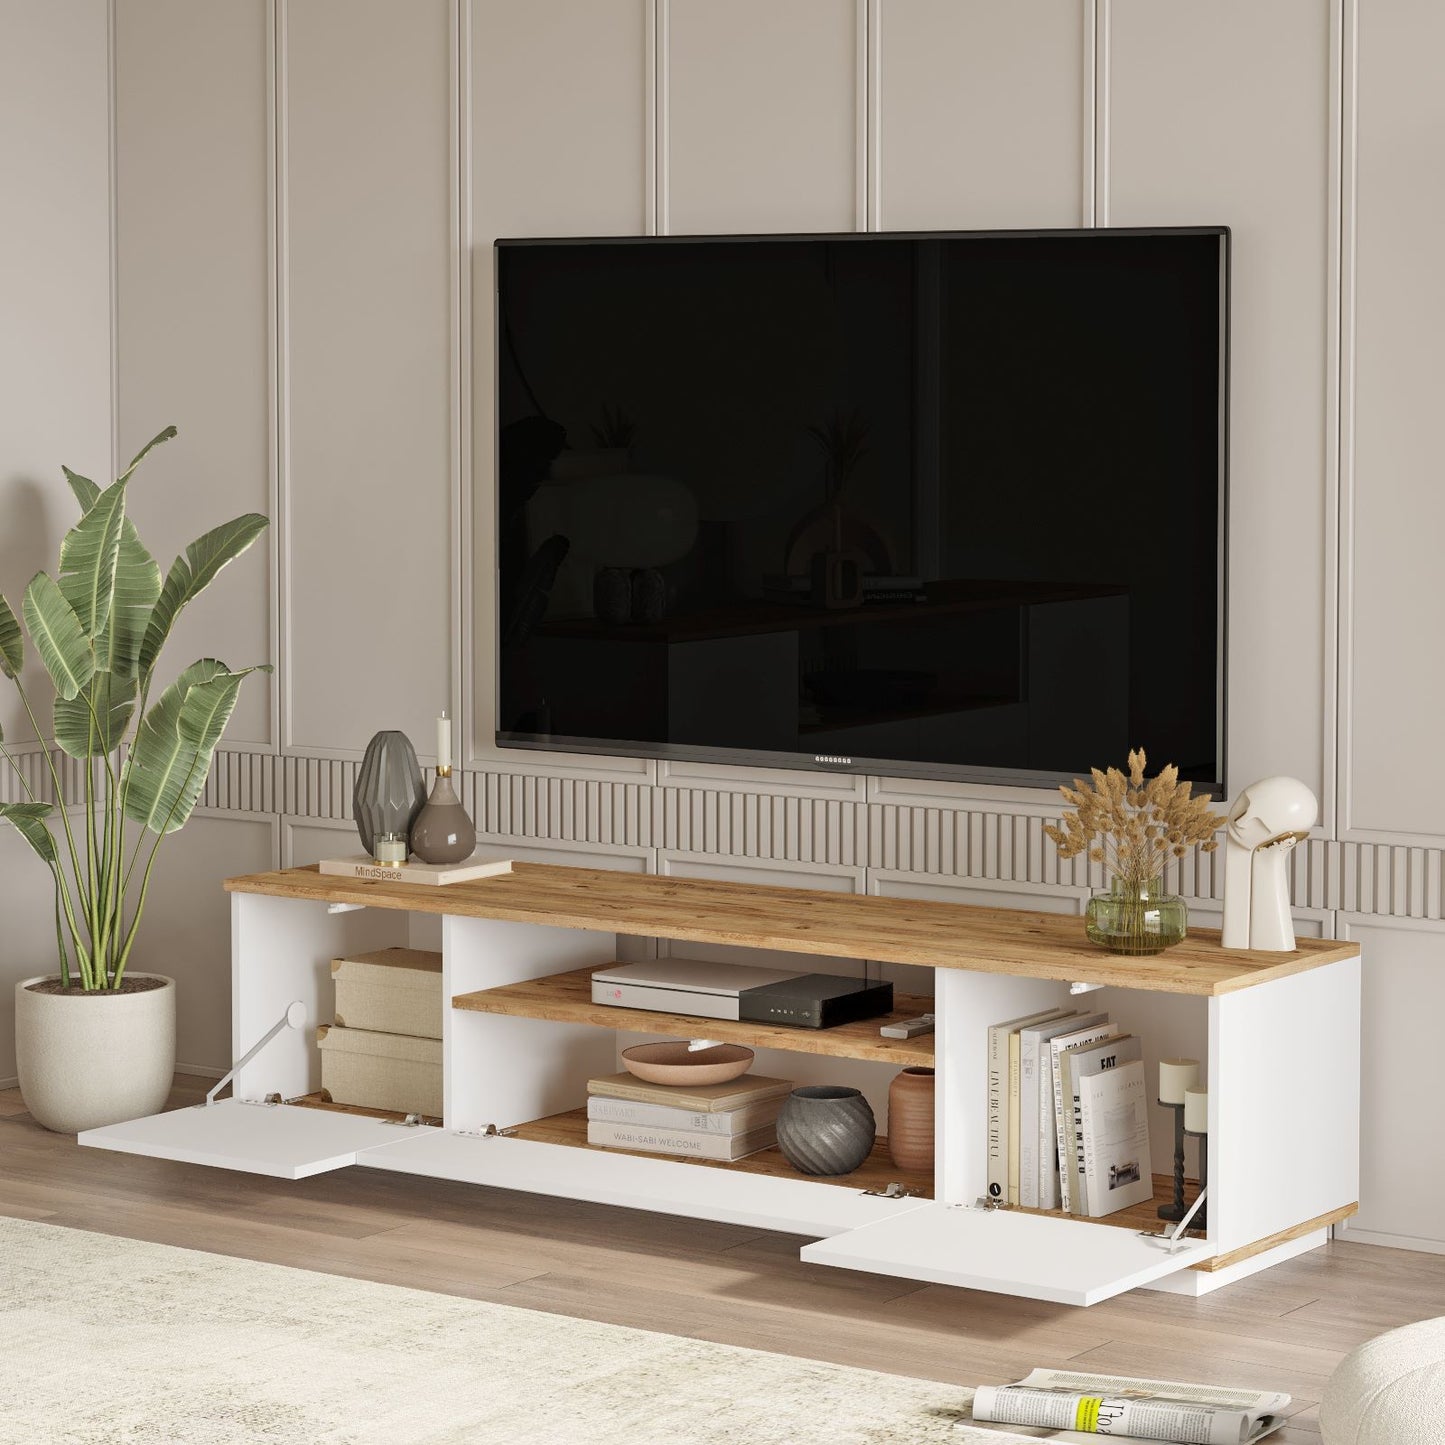 Mueble Elegante Tv Futura - Venprodin -  180 Cm Pino - Blanco